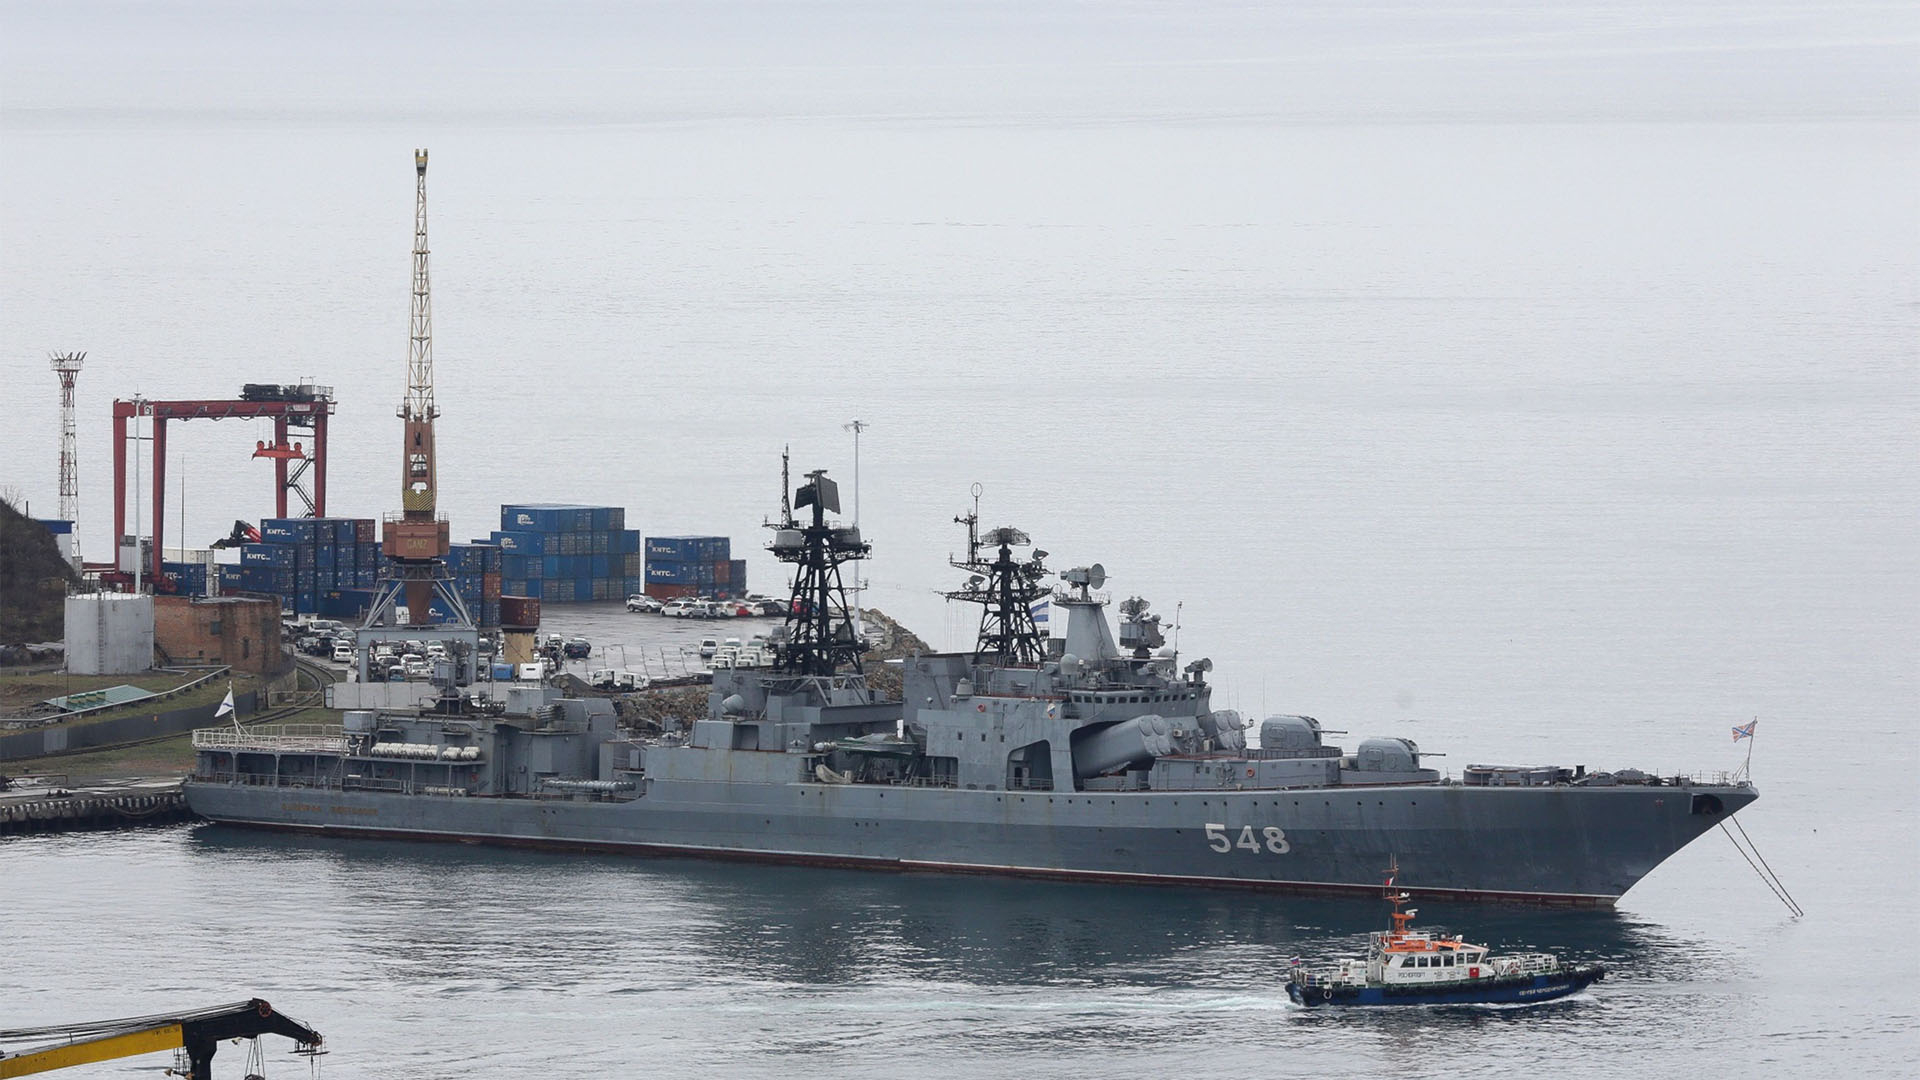 El destructor de la Armada rusa 'Admiral Panteleyev' 548 monta sus amarras en la entrada de la bahía del Cuerno de Oro en Vladivostok, Rusia, el viernes 26 de abril de 2019. Fotógrafo: Andrey Rudakov/Bloomberg